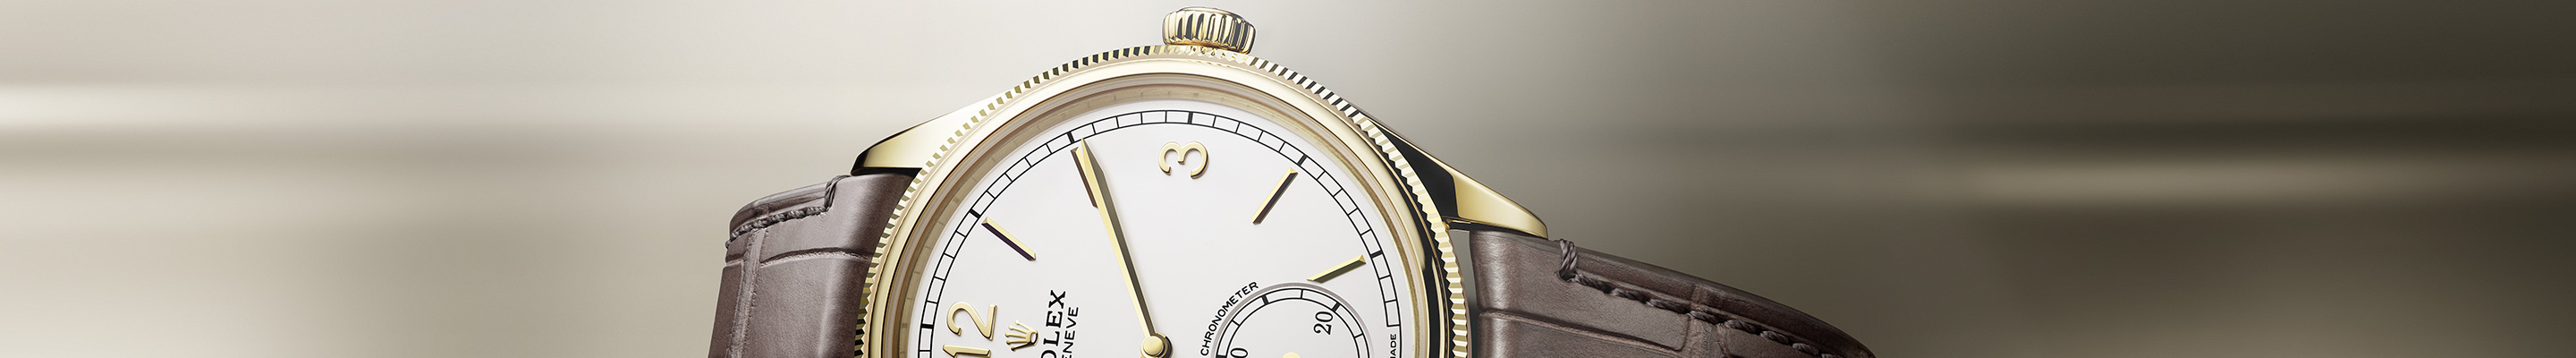 Rolex 1908 Watches